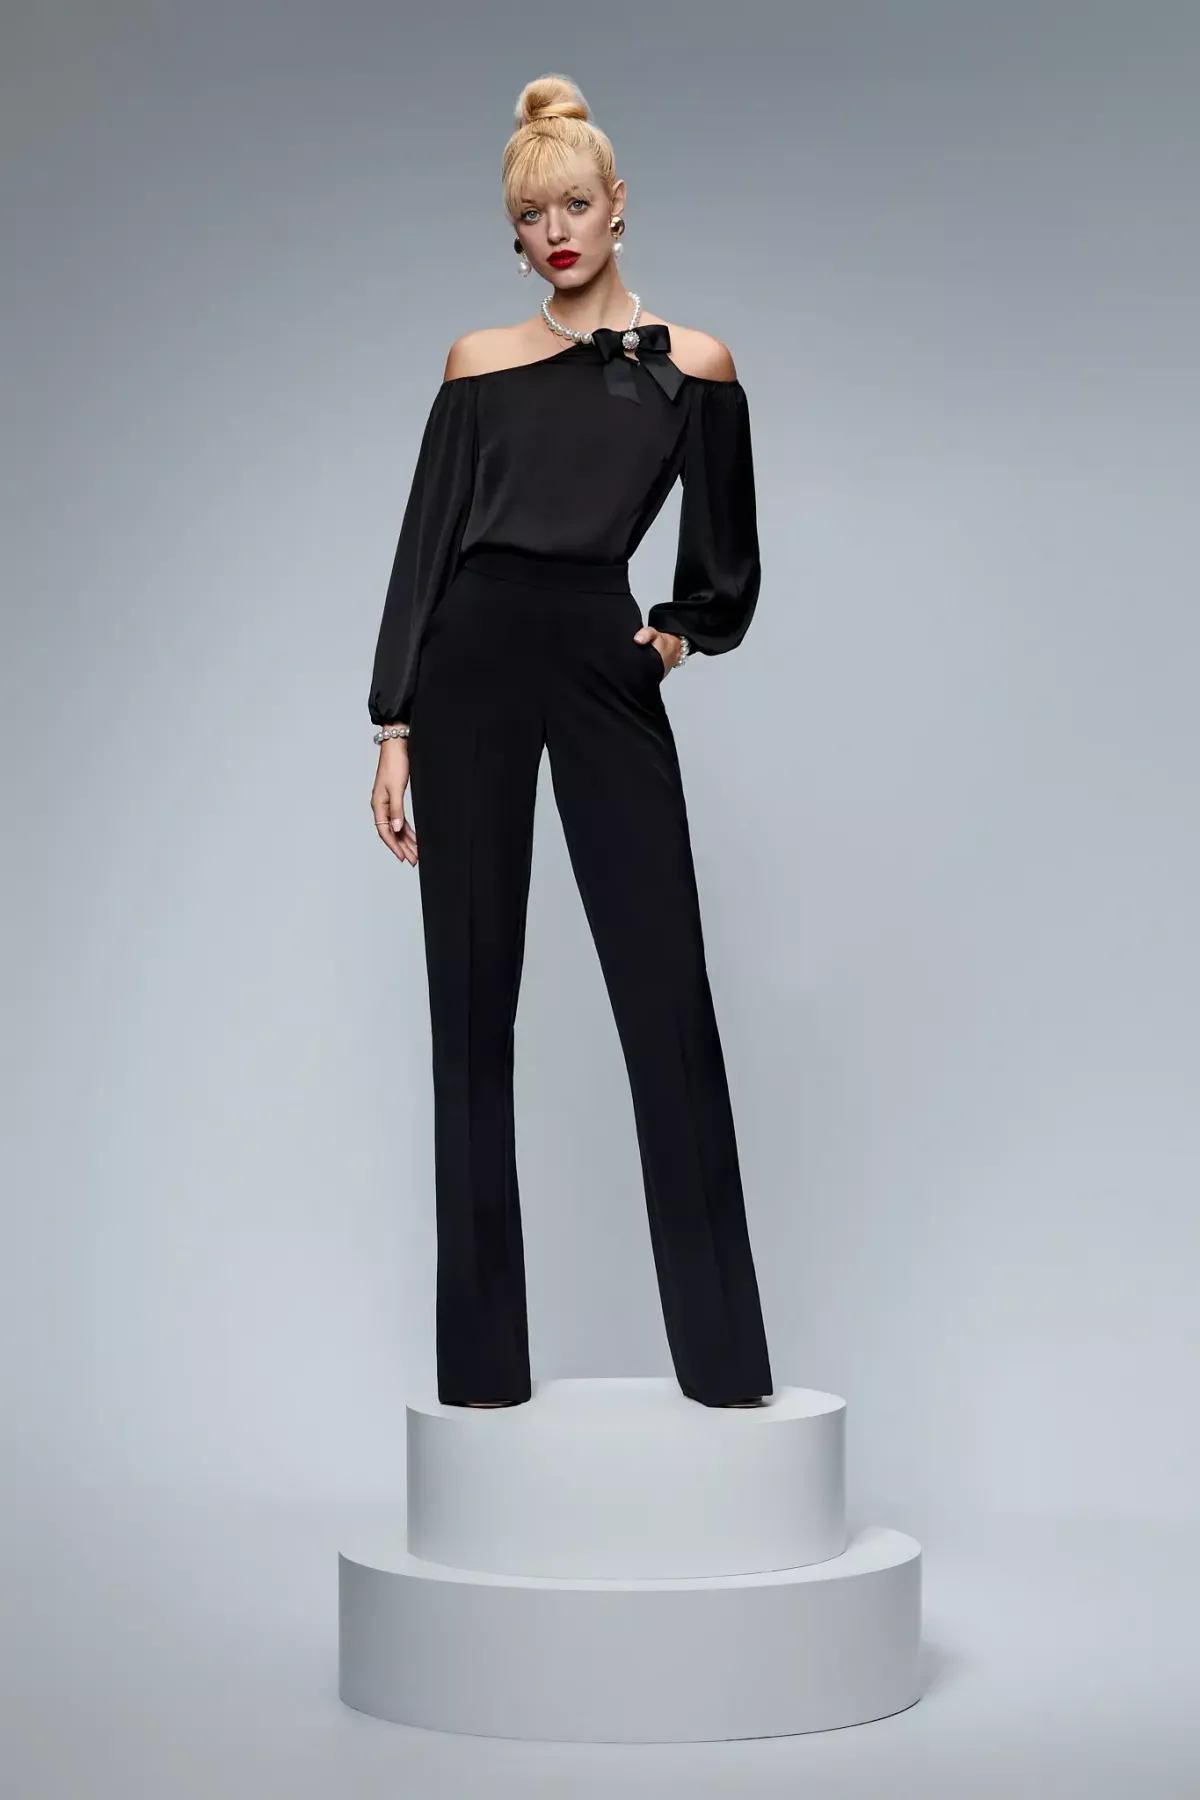 Compleu elegant din vascoza negru, bluza cu perle+fundita si pantaloni evazati  BBY 20212